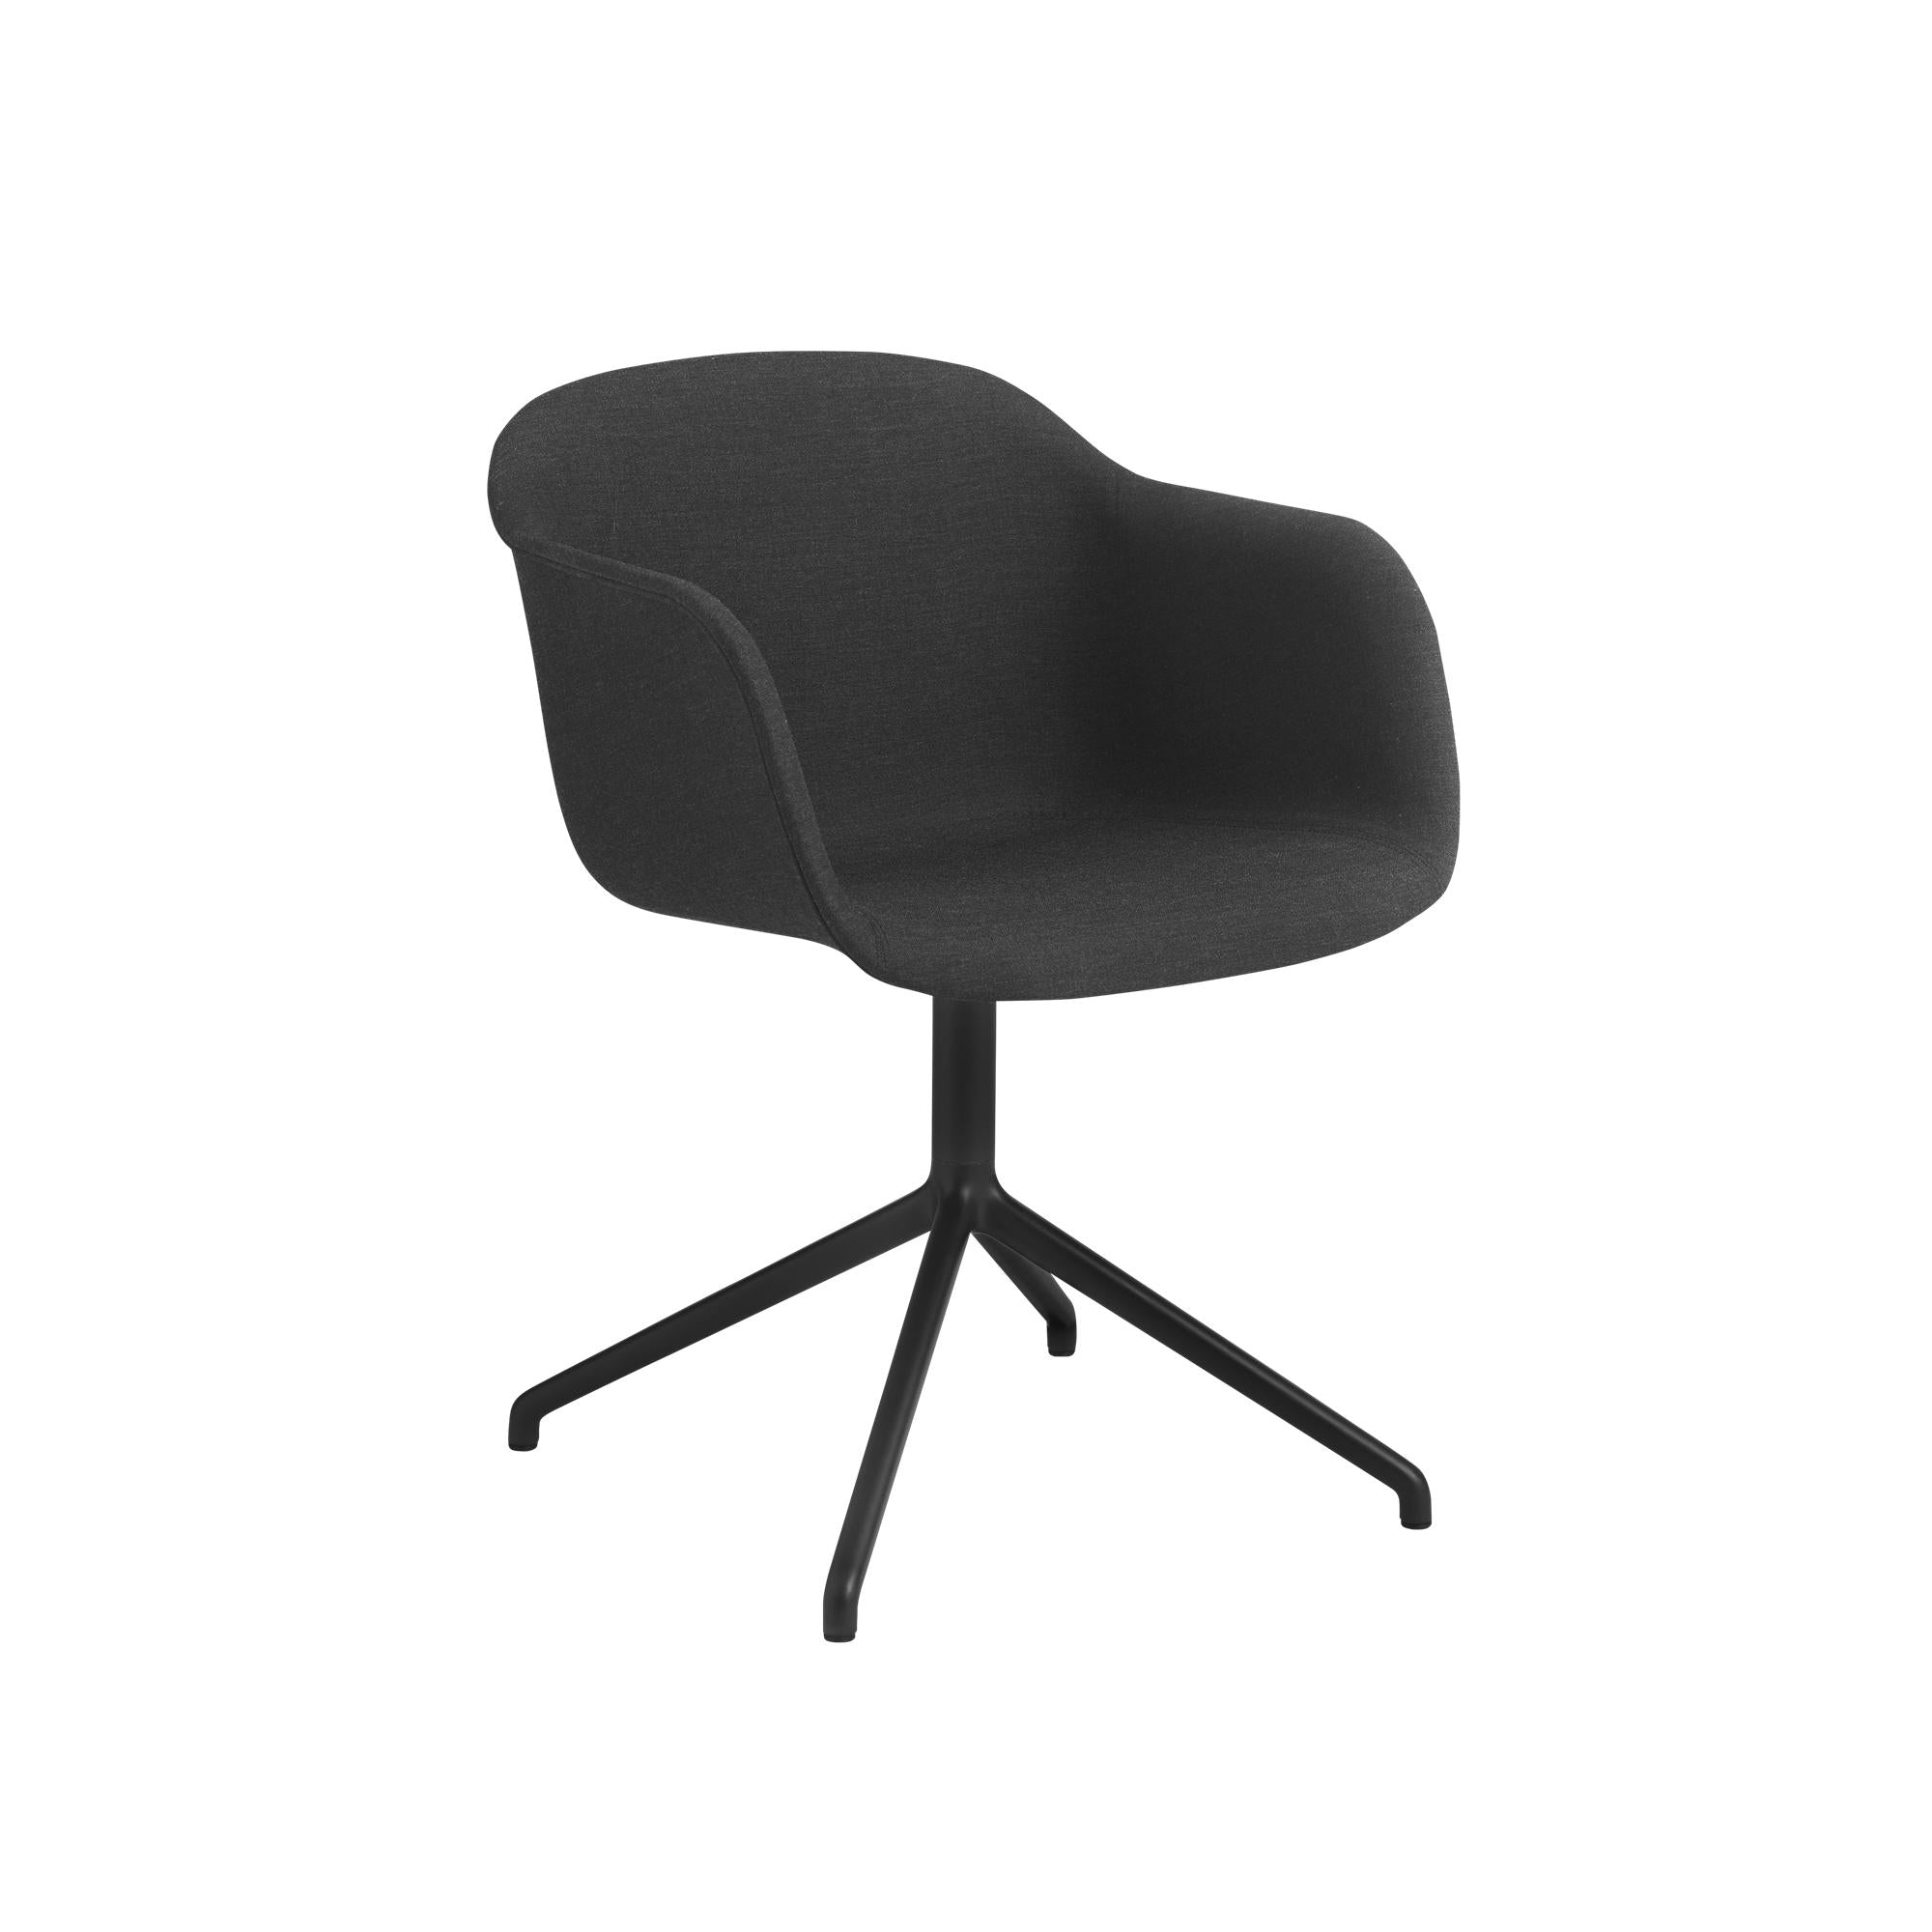 Base giratoria de sillón de fibra muuto, asiento de tela, negro